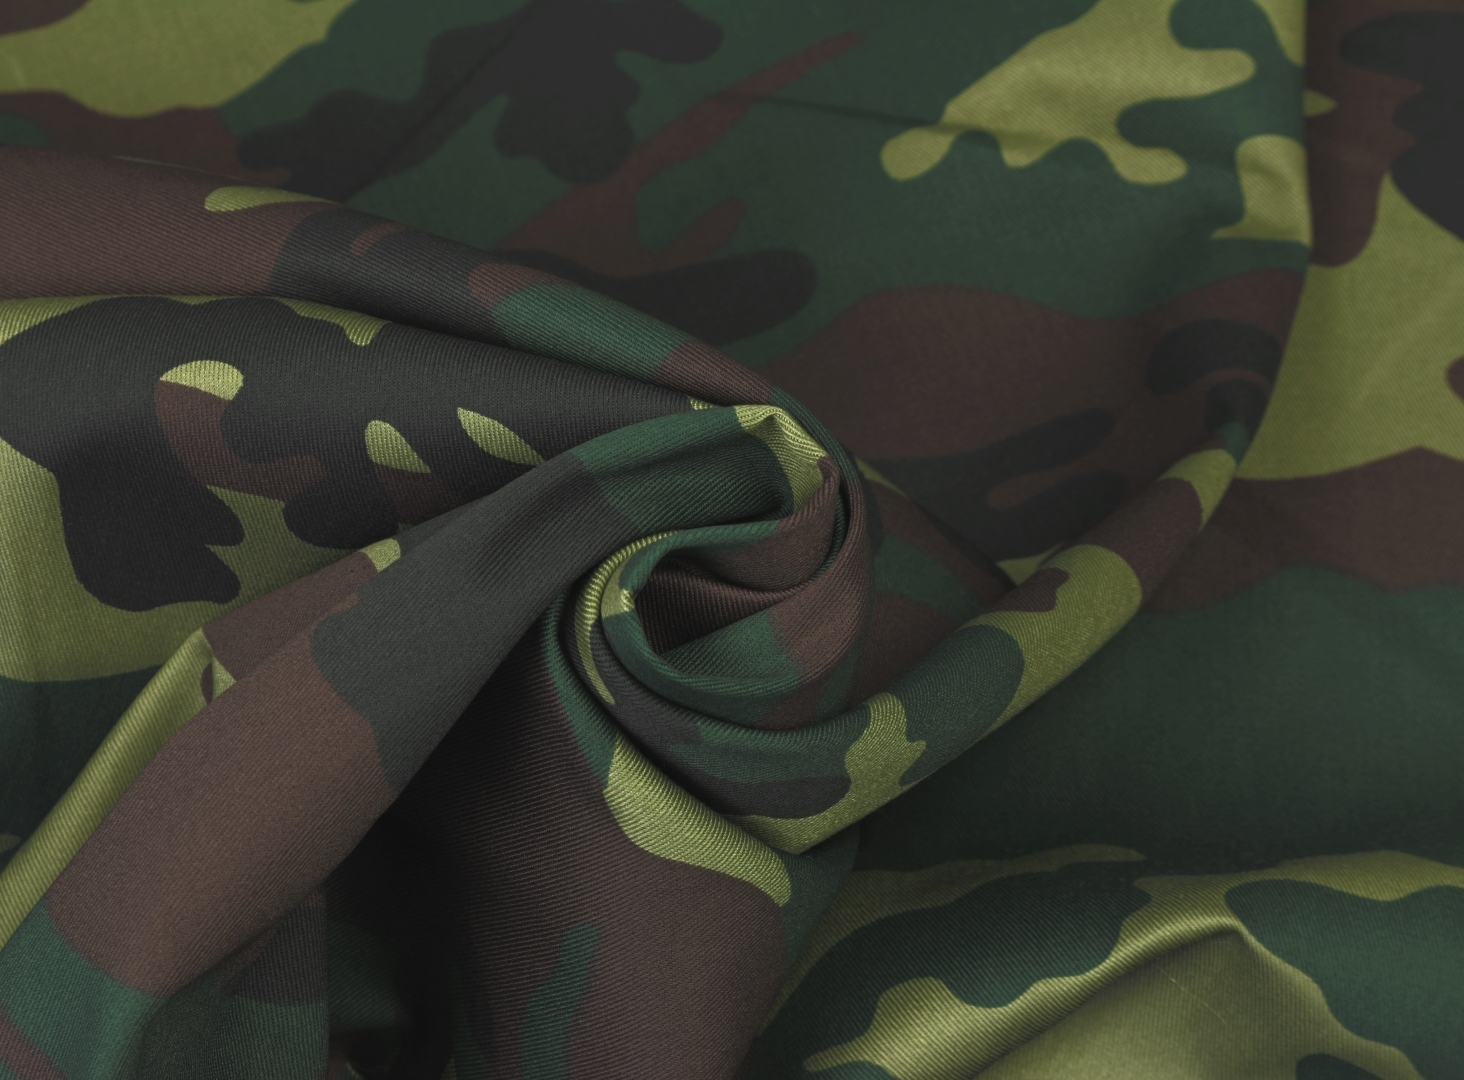 FEINGABARDINE Bekleidungsstoff - Camouflage GRÜN BRAUN SCHWARZ